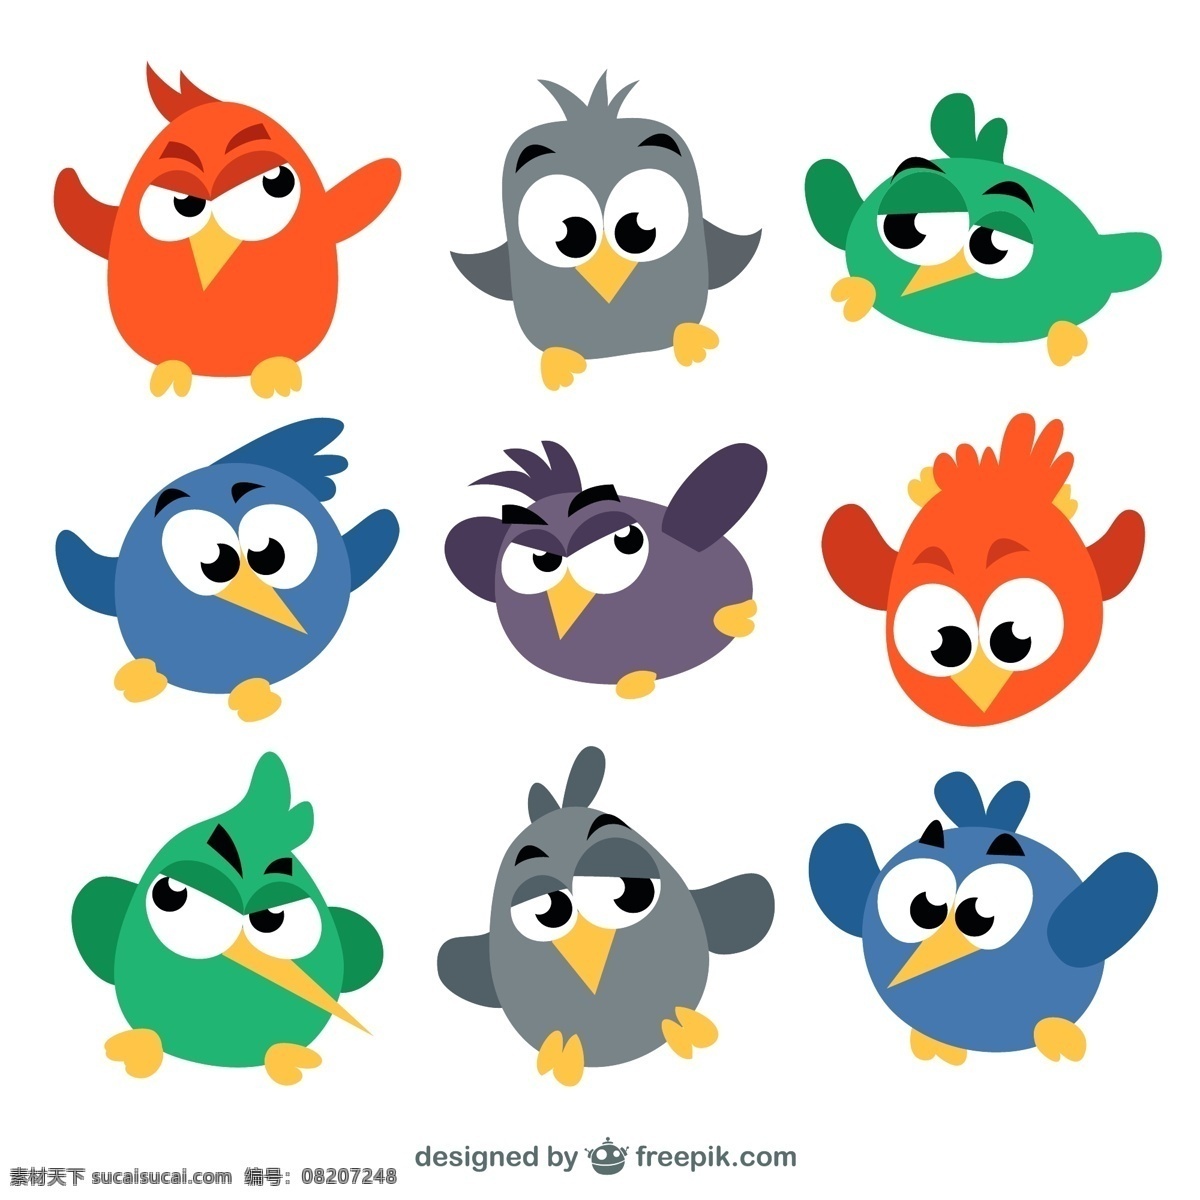 卡通小鸟素材 小鸟素材 矢量素材 卡通小鸟 大眼小鸟 卡通动物 小动物 可爱动物 卡通设计